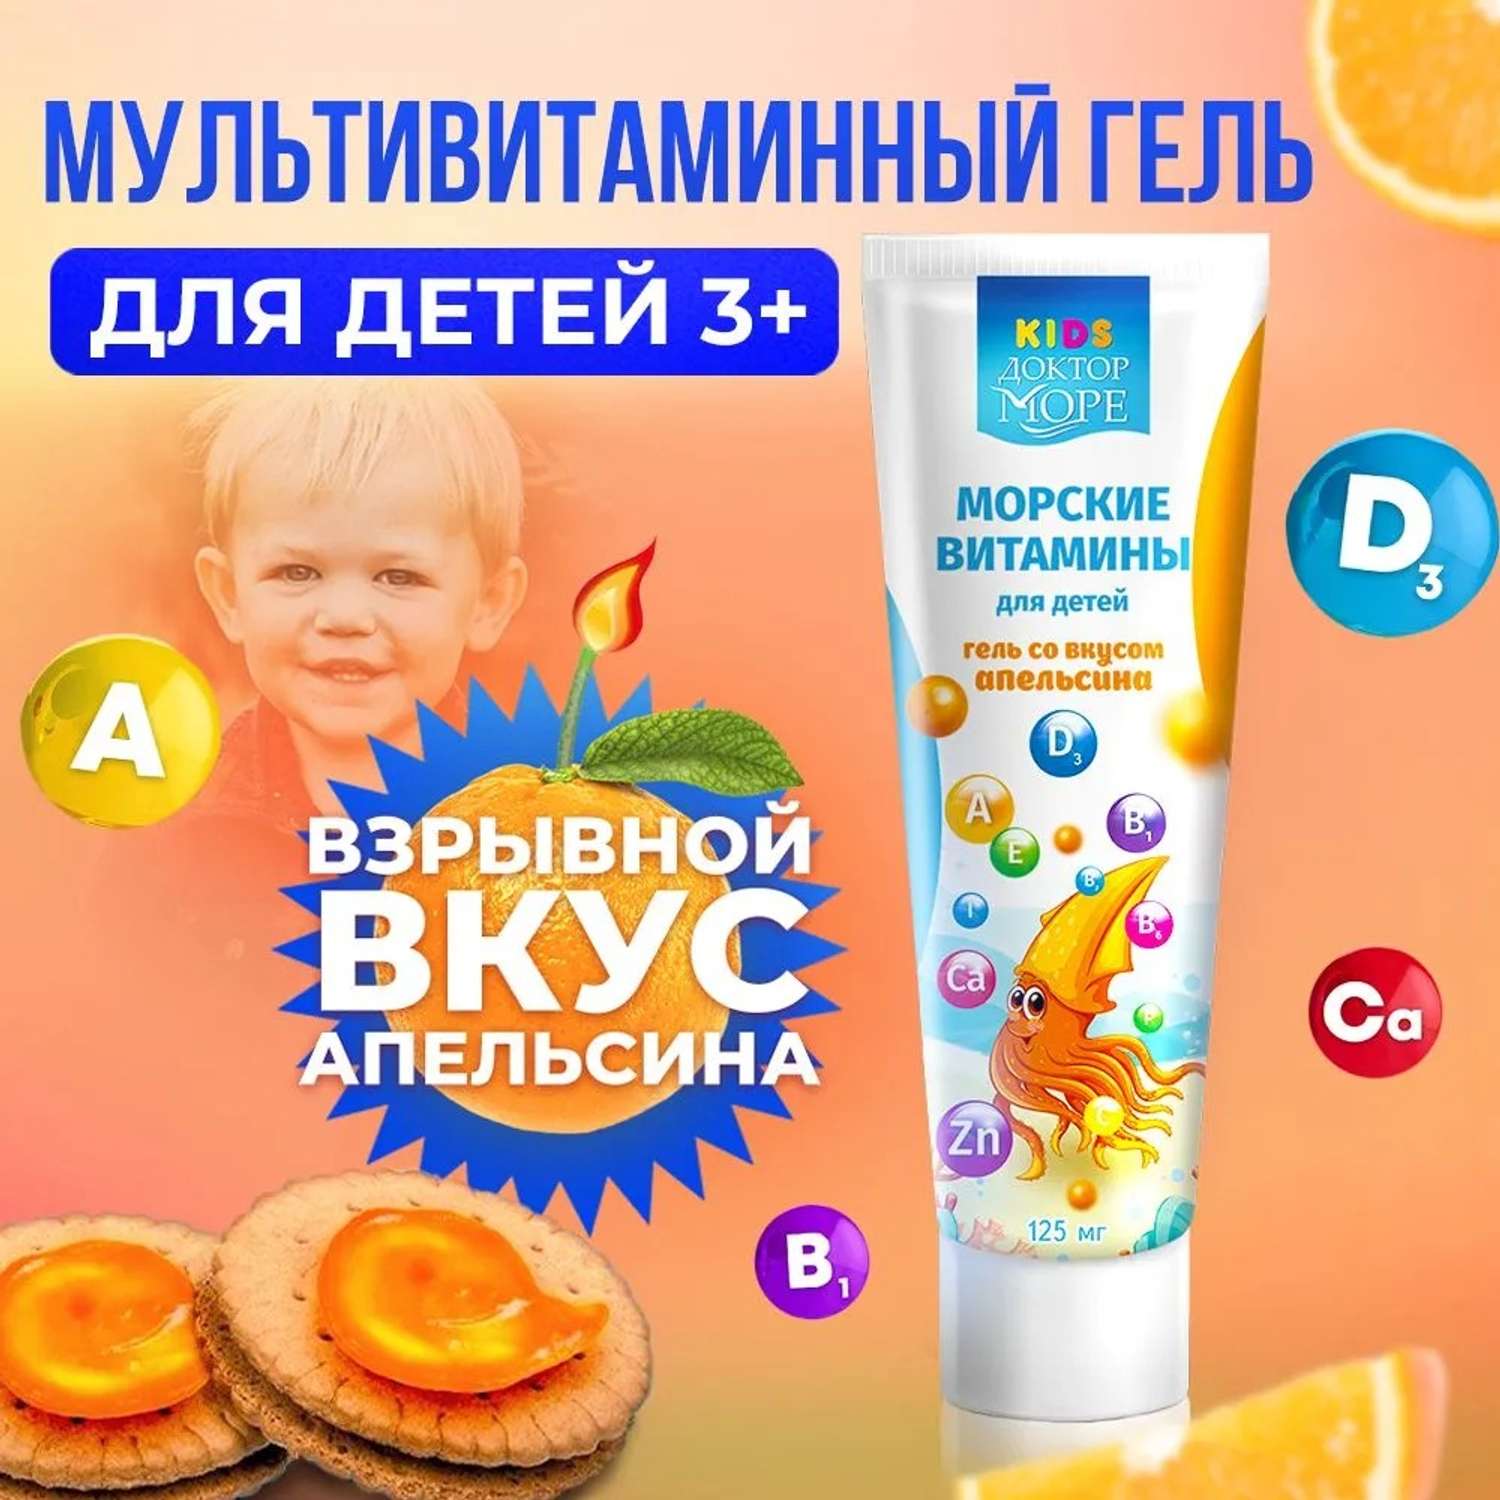 Морские витамины для детей Доктор Море гель со вкусом апельсина 125 мл - фото 1